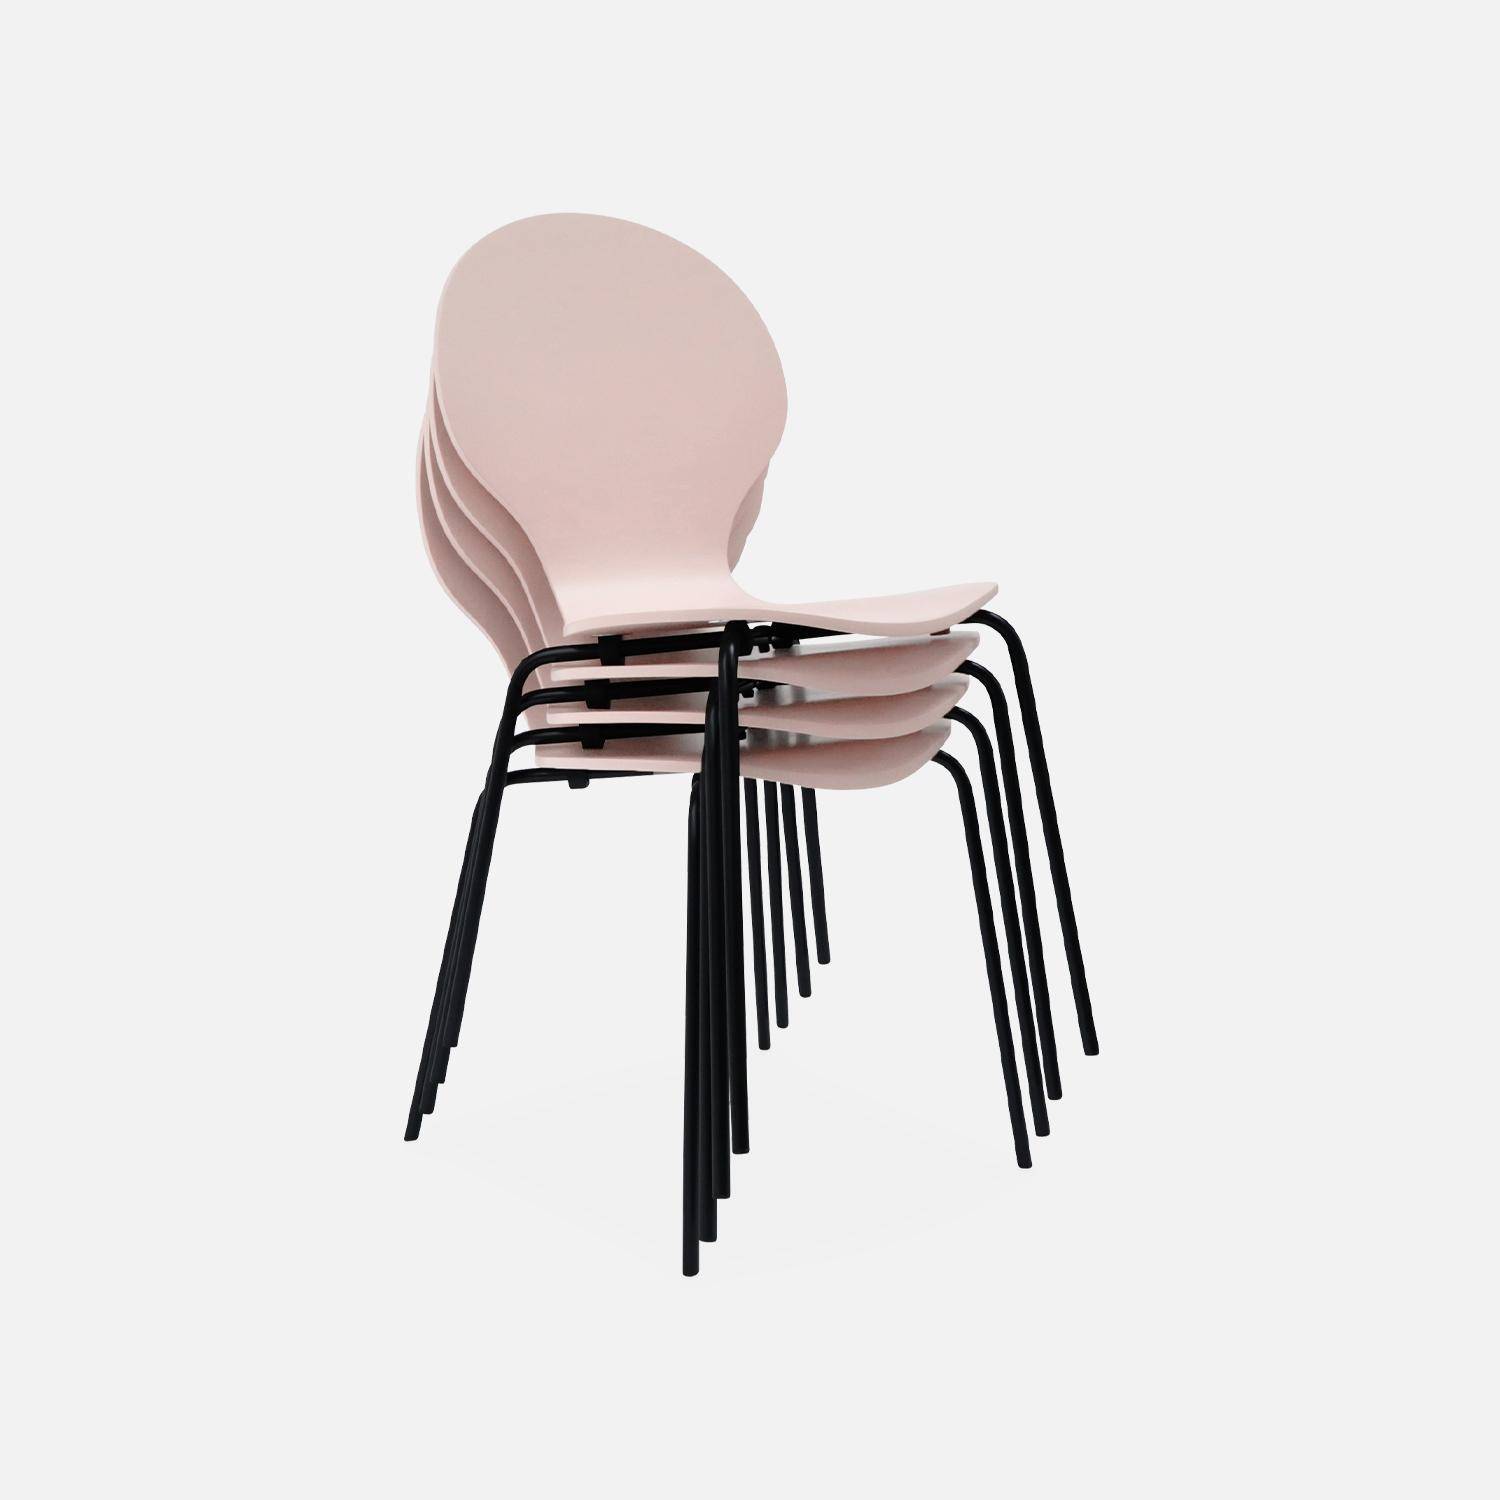 Set di 4 sedie rosa retro impilabili, legno di hevea e compensato, gambe in acciaio, Naomi, L 43 x P 48 x H 87cm Photo6